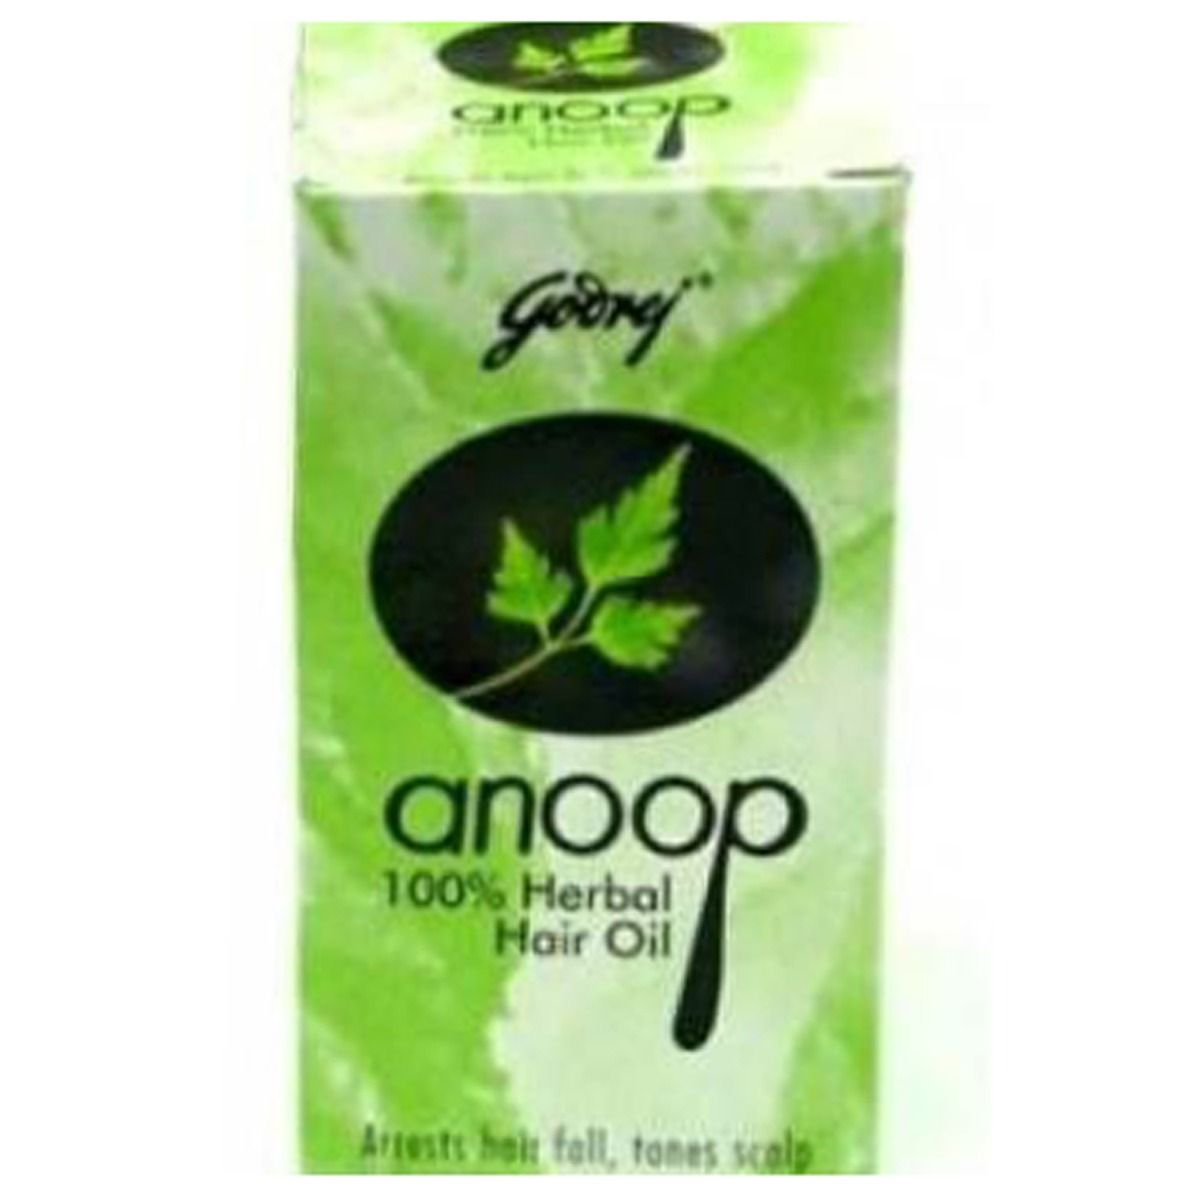 Buy Godrej Anoop Herbal Hair Oil, 50 ml Online